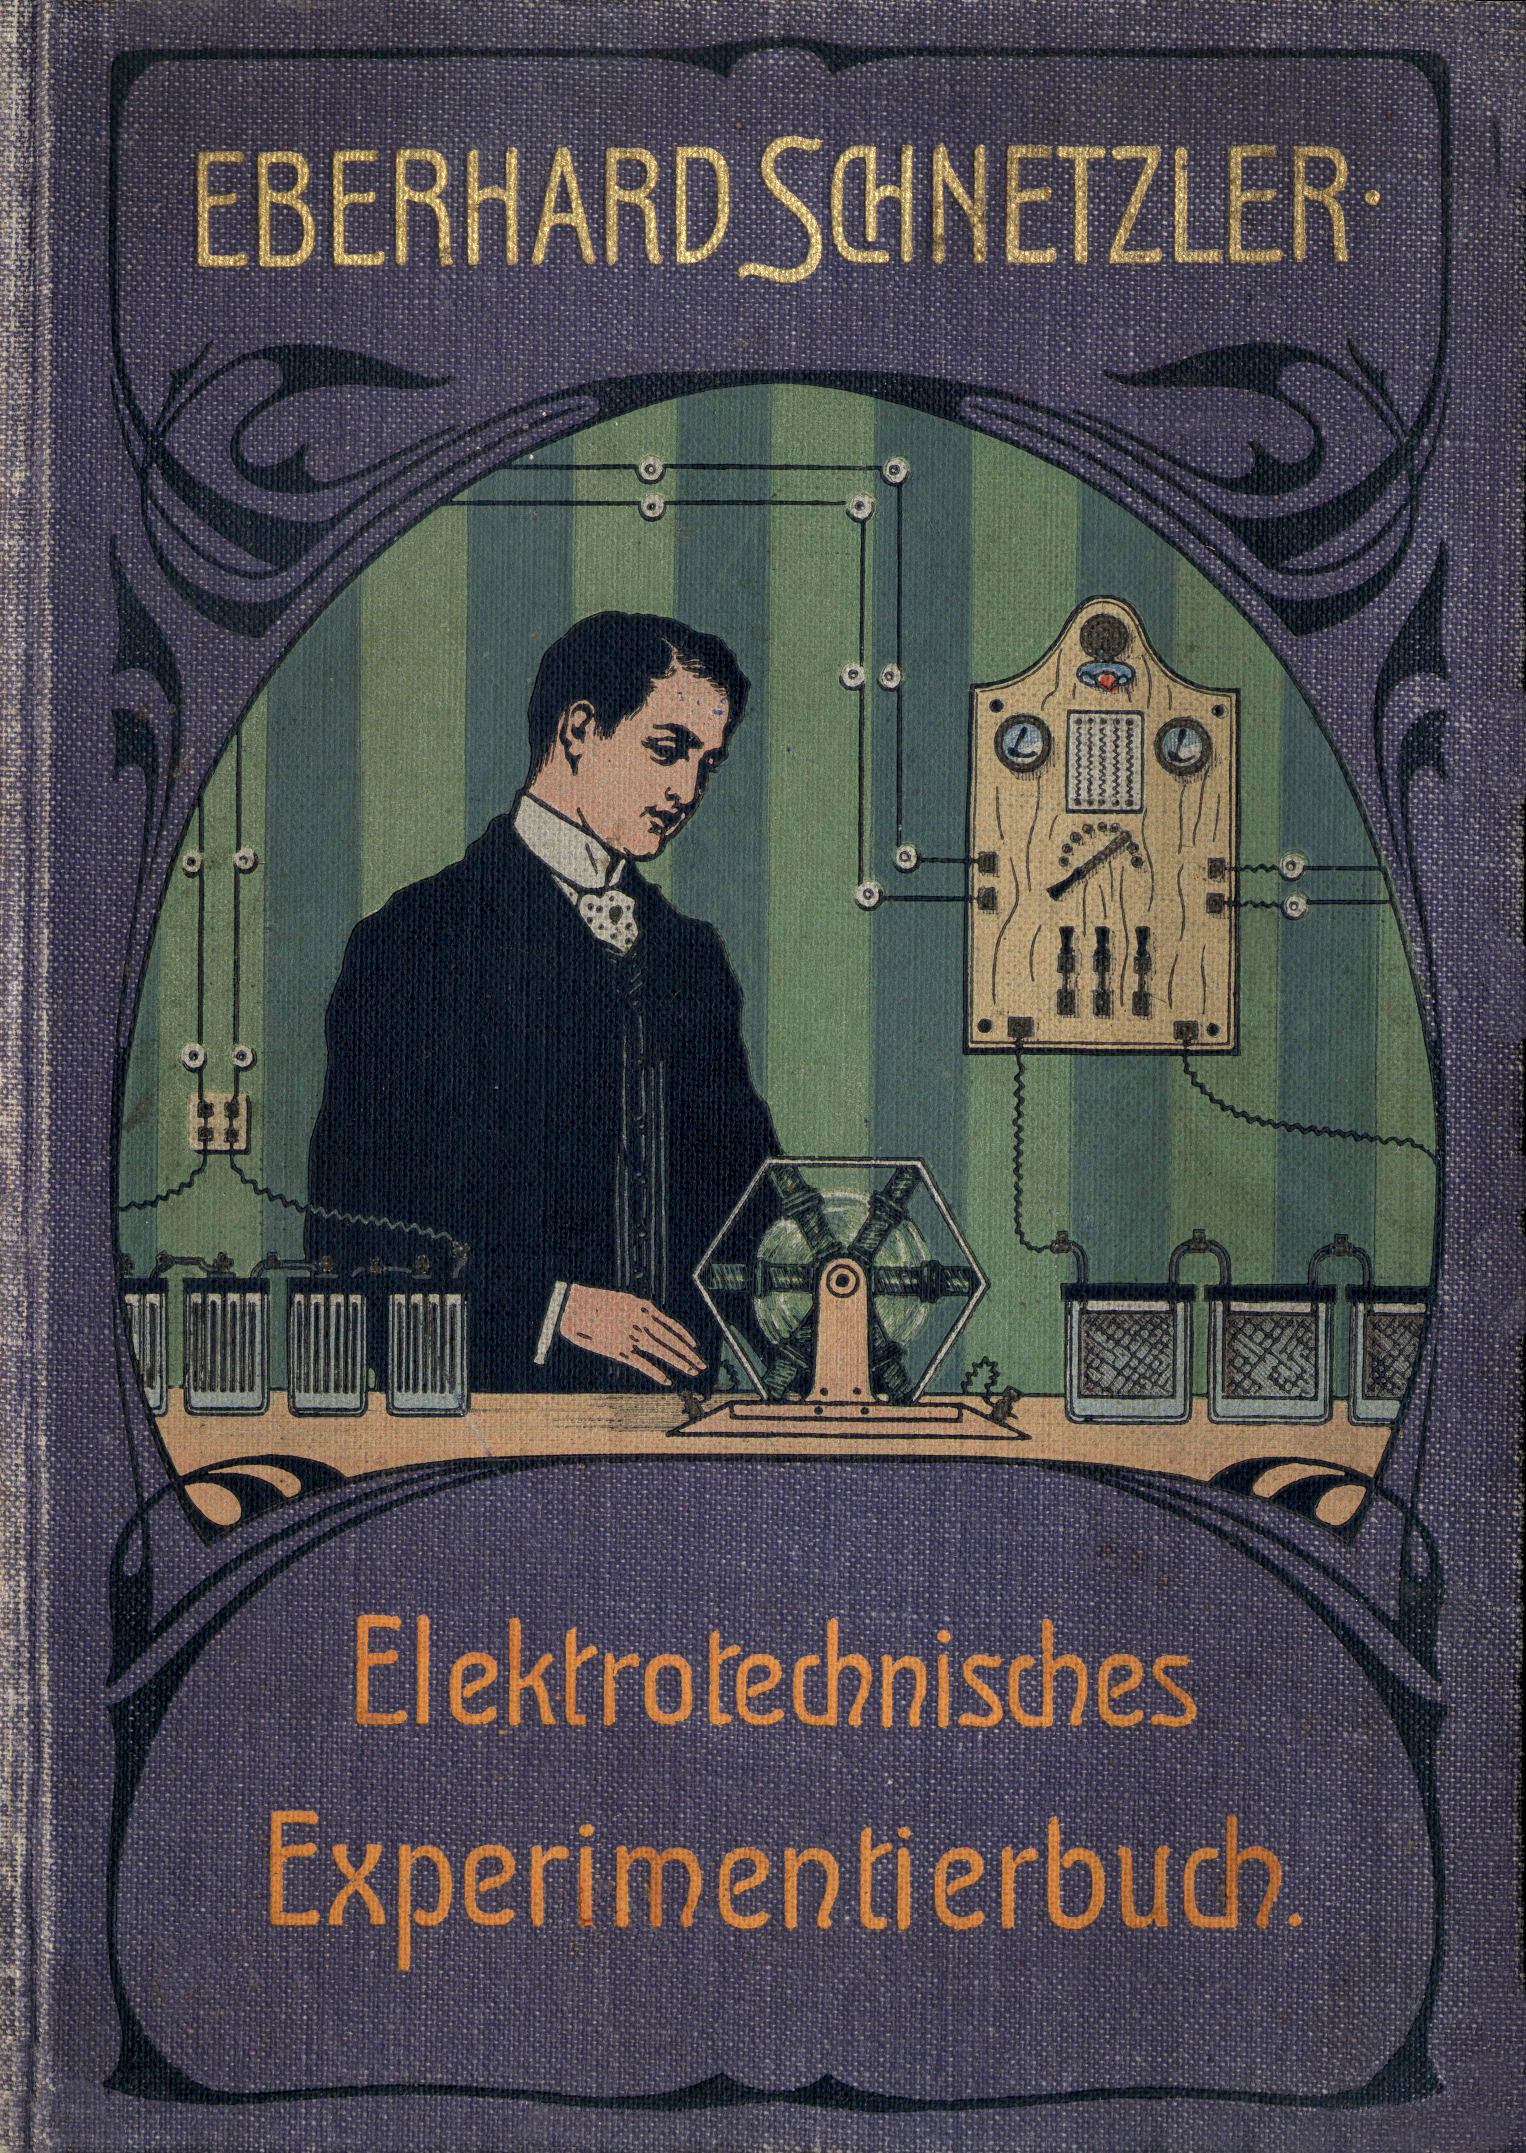 Elektrotechnisches Experimentierbuch: Eine Anleitung zur Ausführung elektrotechnischer Experimente unter Verwendung einfachster, meist selbst herzustellender Hilfsmittel